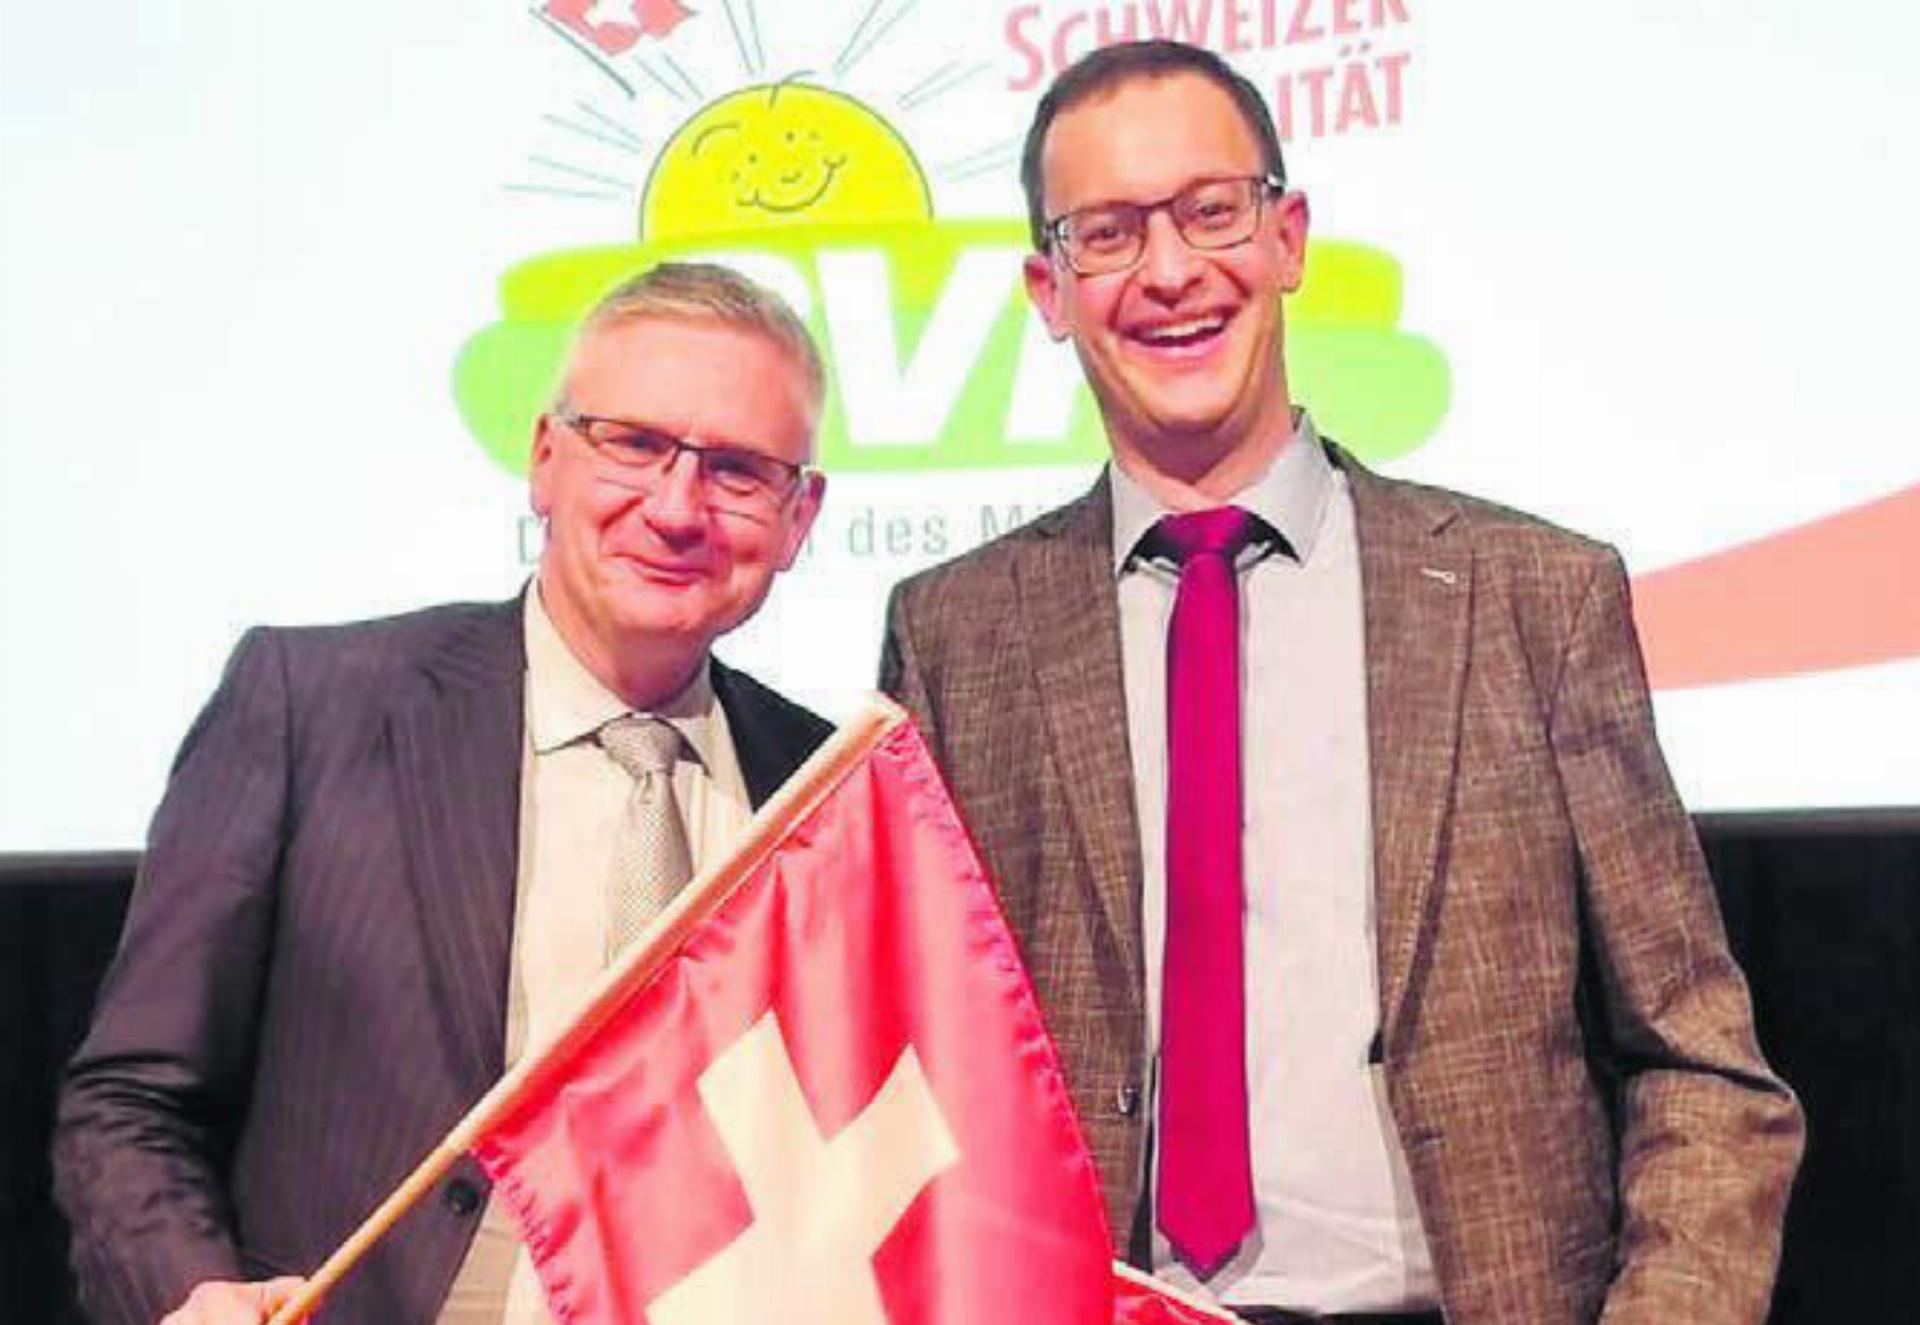 Nationalrat Andreas Glarner (links) stellt sich zur Wiederwahl, Grossrat Christoph Hagenbuch zur Wahl zur Verfügung. Bild: zg